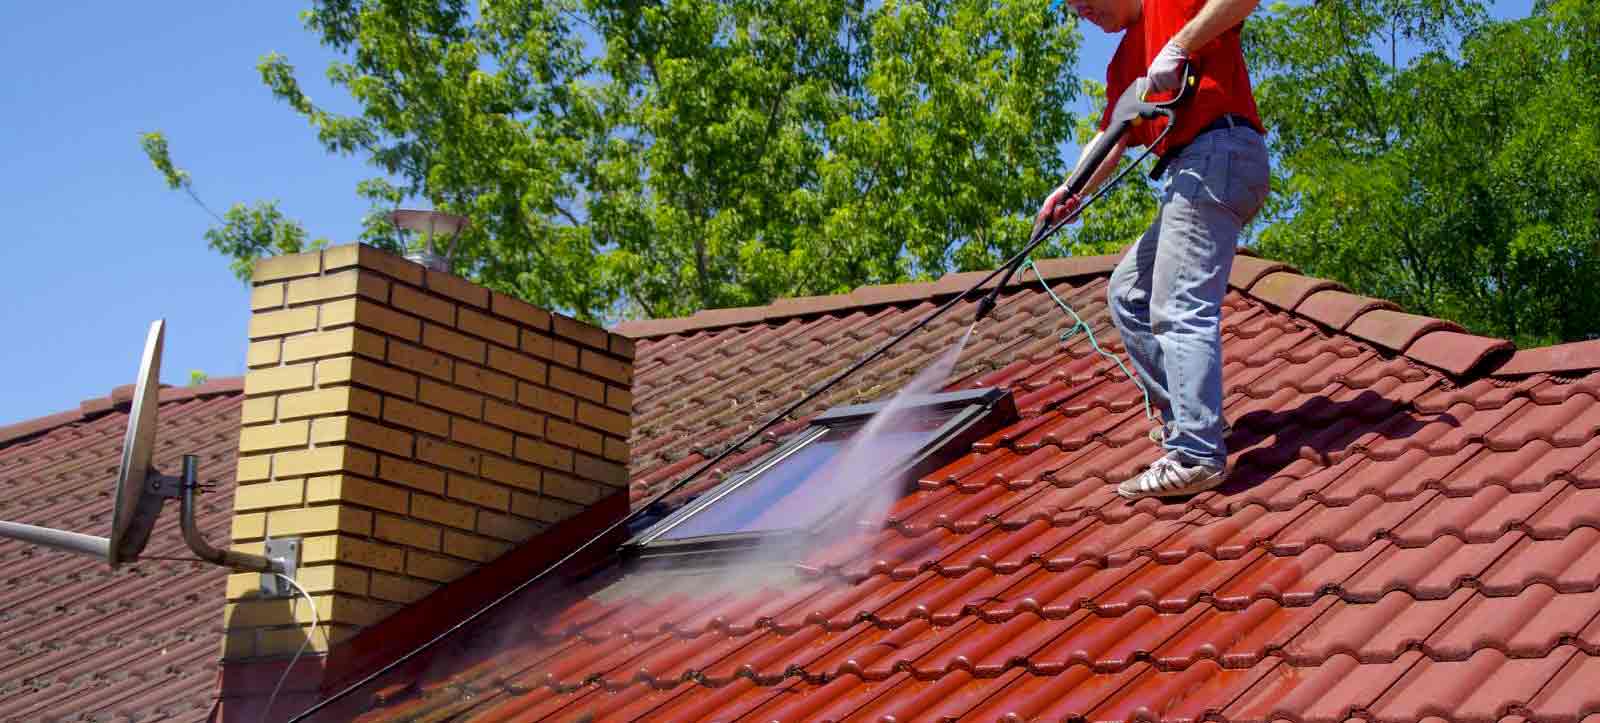 Nettoyage et Démoussage toiture : Solution de nettoyage de toiture professionnelle et produit antimousse. Sur Liège en Belgique  - HV TOITURE FACADE LIEGE